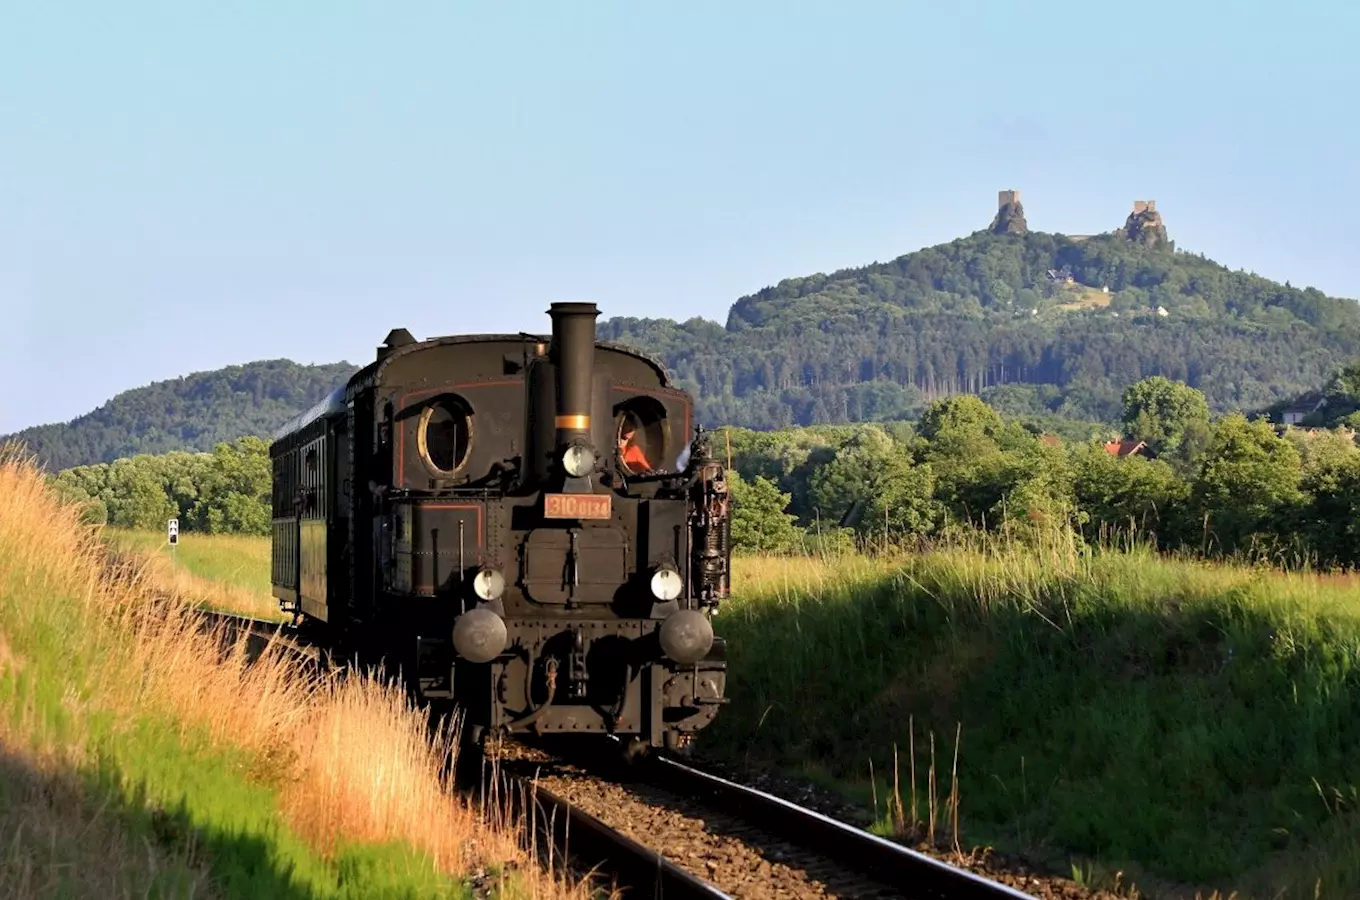 Letos naposledy se můžete projet parním vlakem Českým rájem